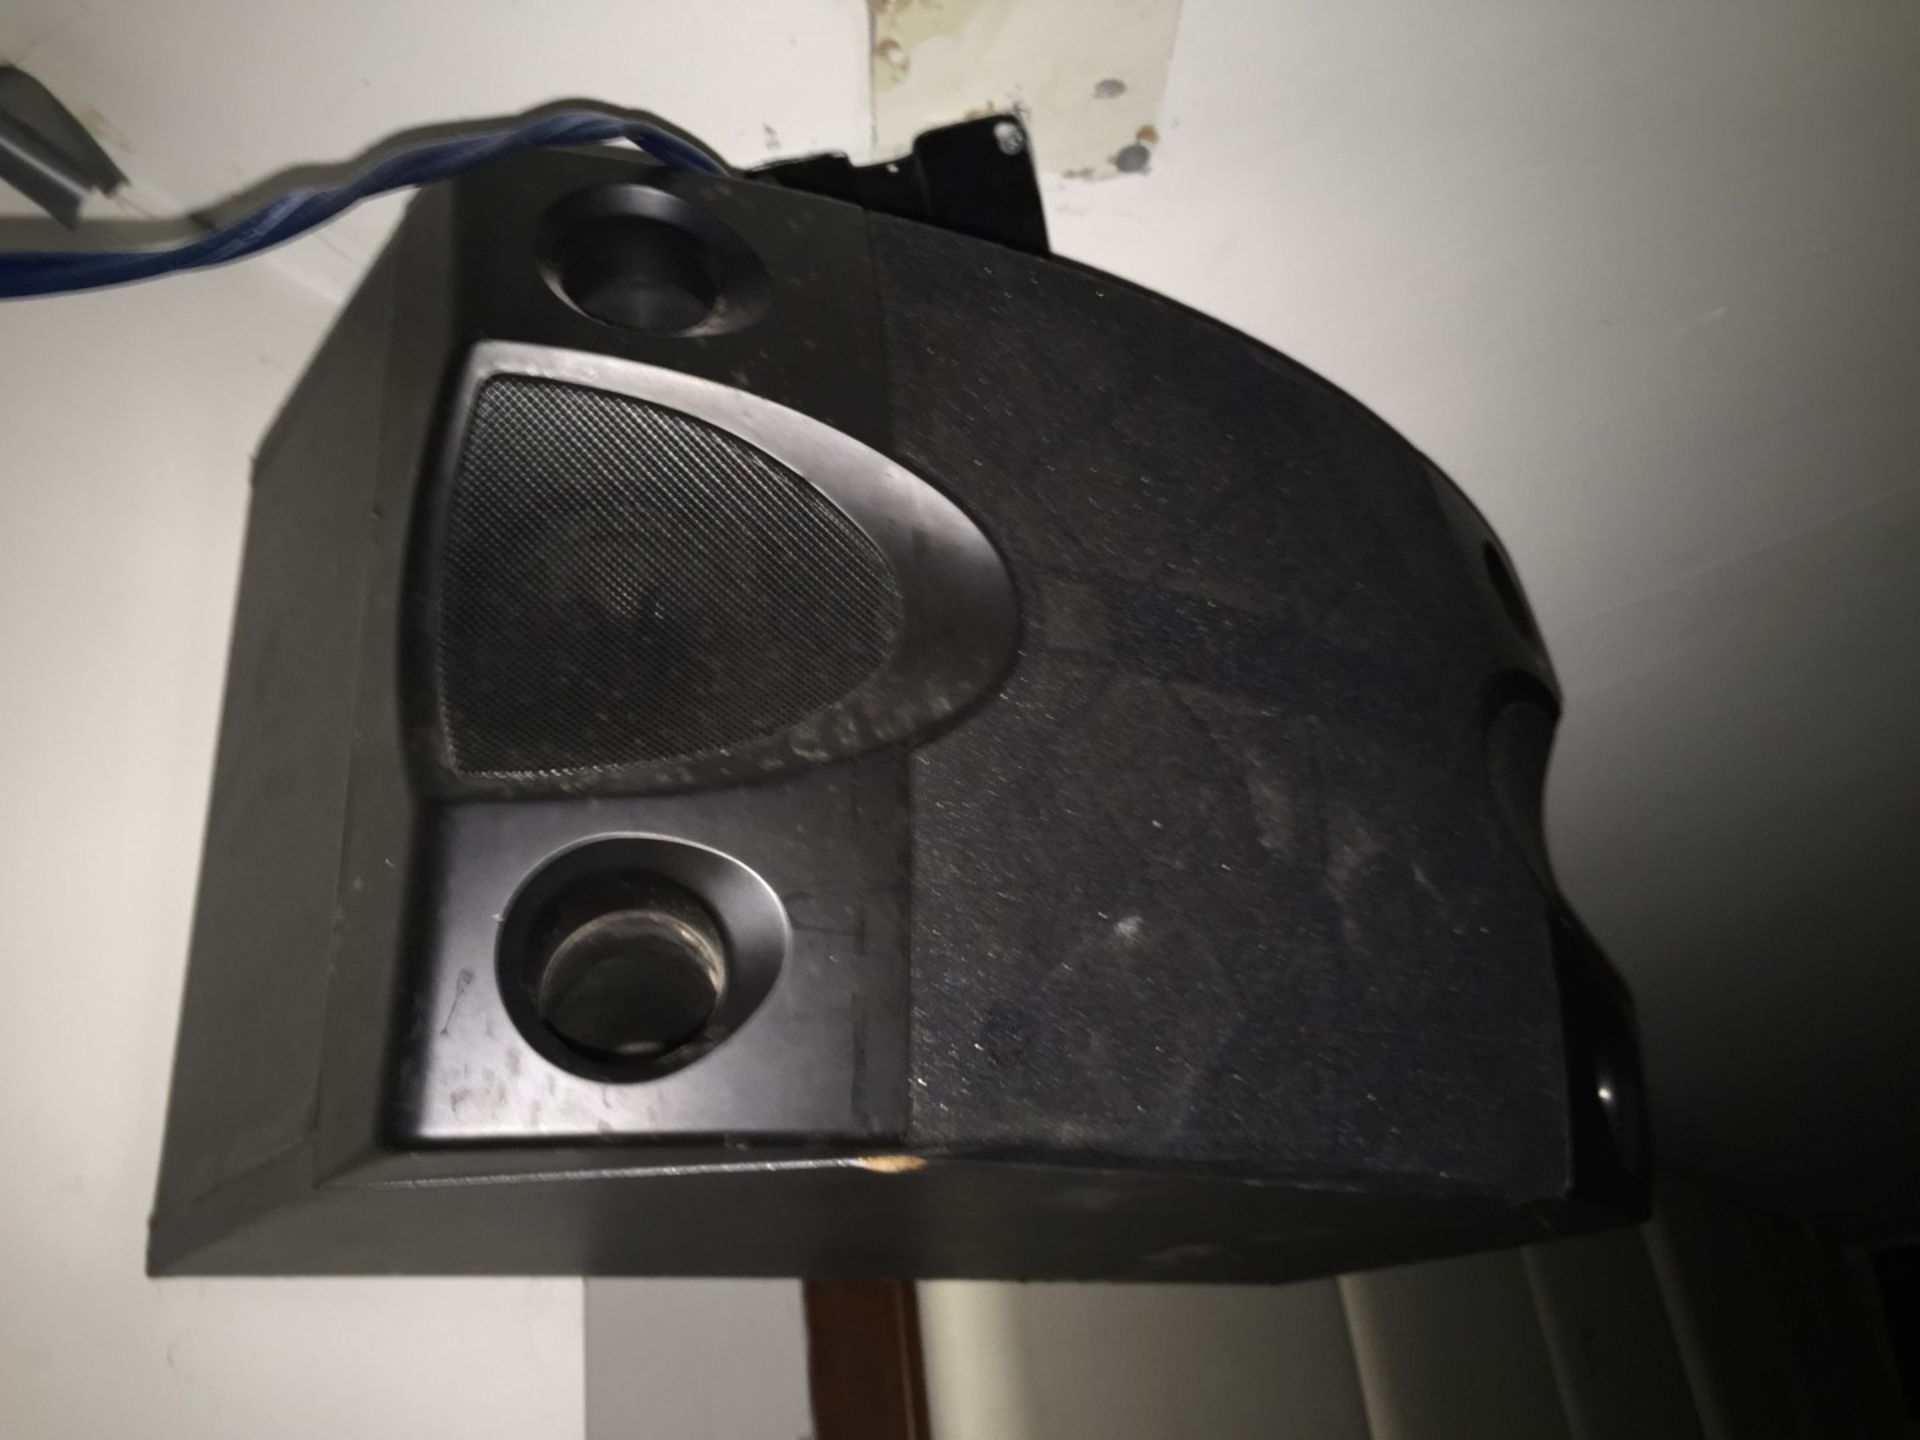 2 x Better Music Builder (BMB) 250w Karaoke Speakers - Model CS252V - Made in Japan - CL188 - Ref - Image 2 of 5